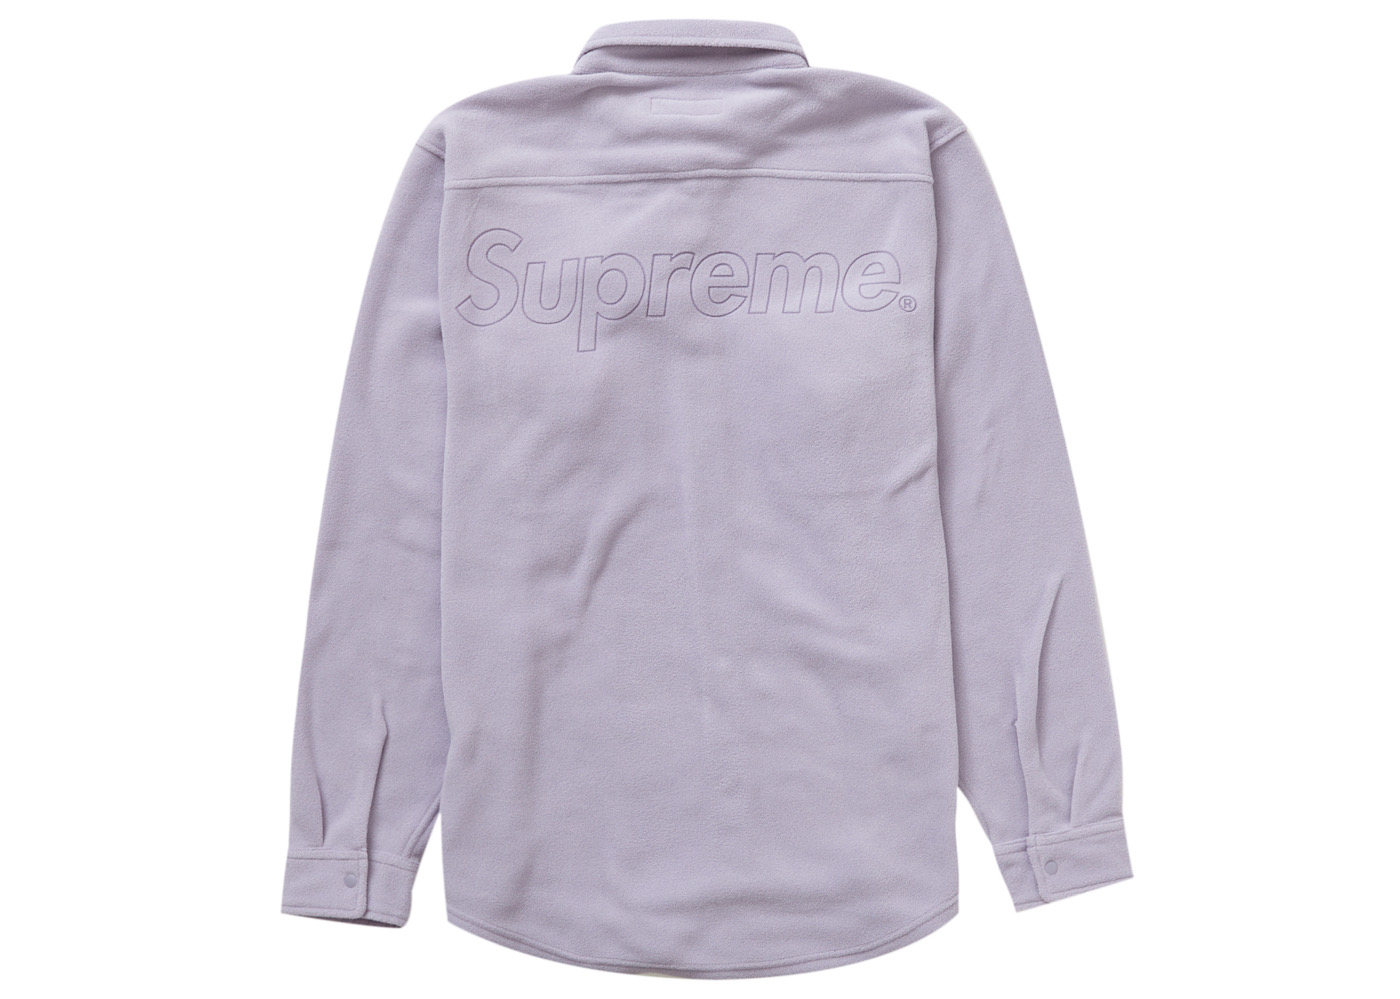 18,500円Supreme Polartec Shirt \